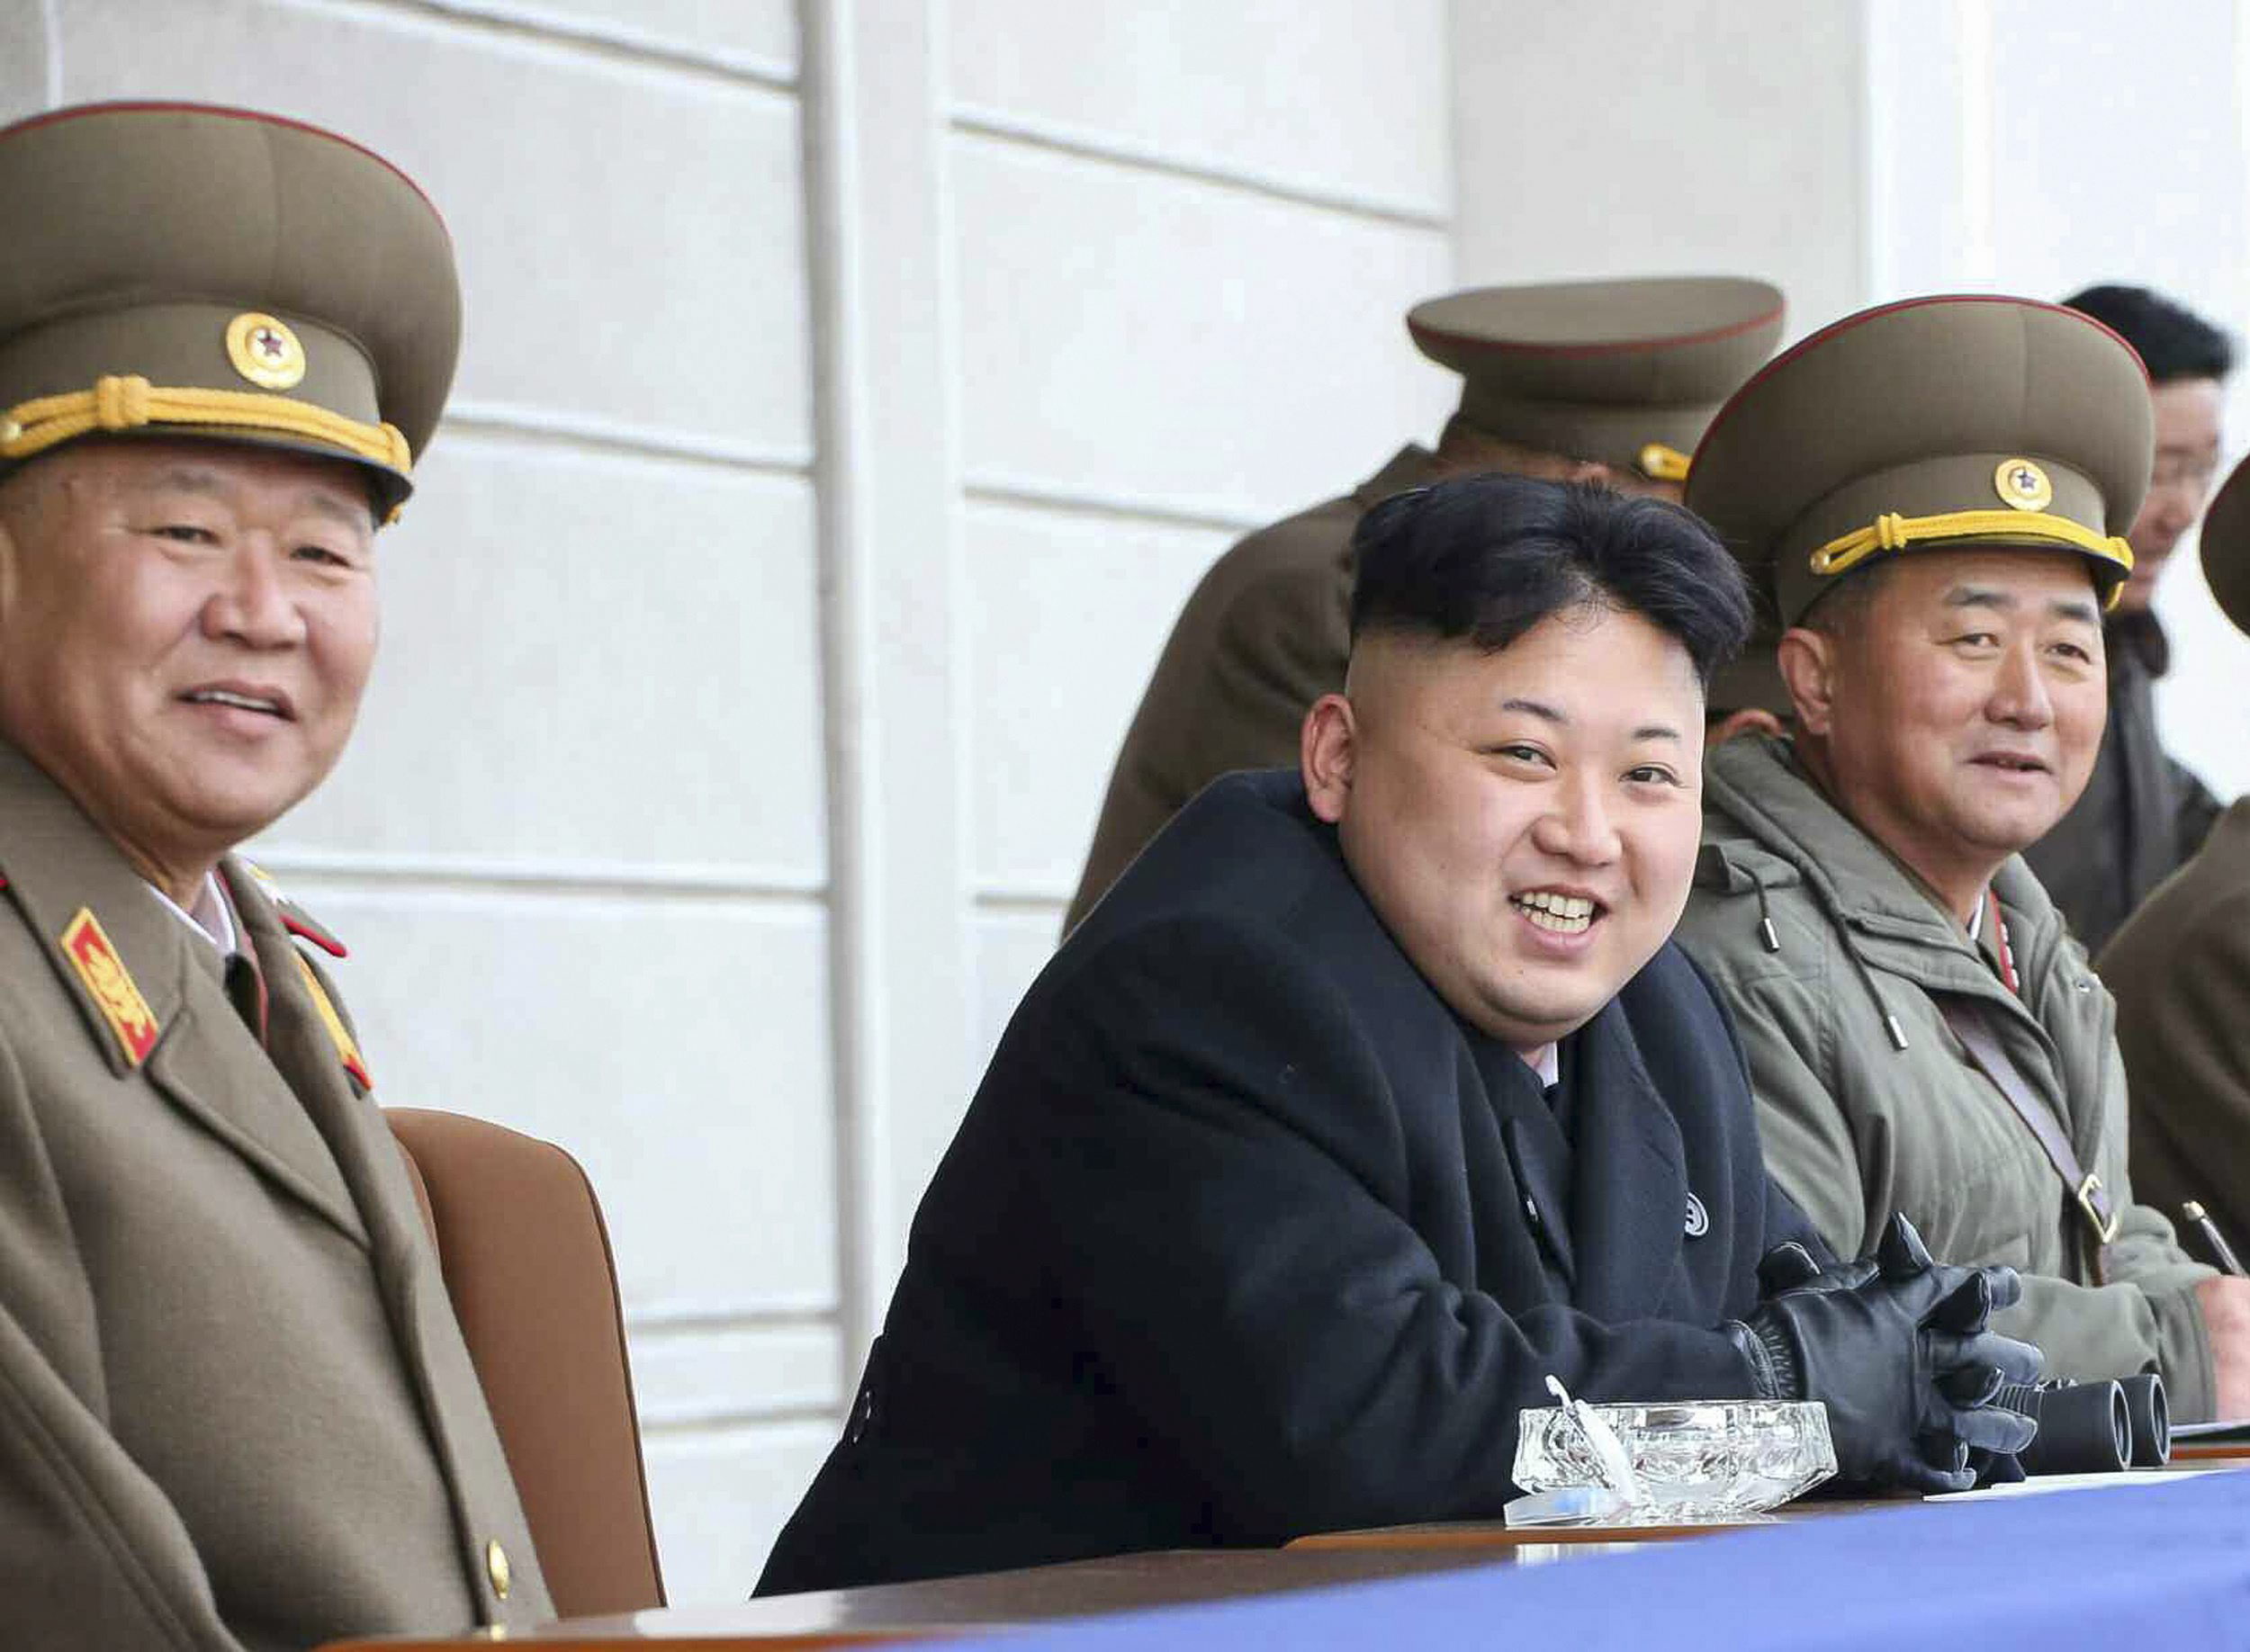 Los norcoreanos, furiosos con una peluquería por burlarse del peinado de Kim